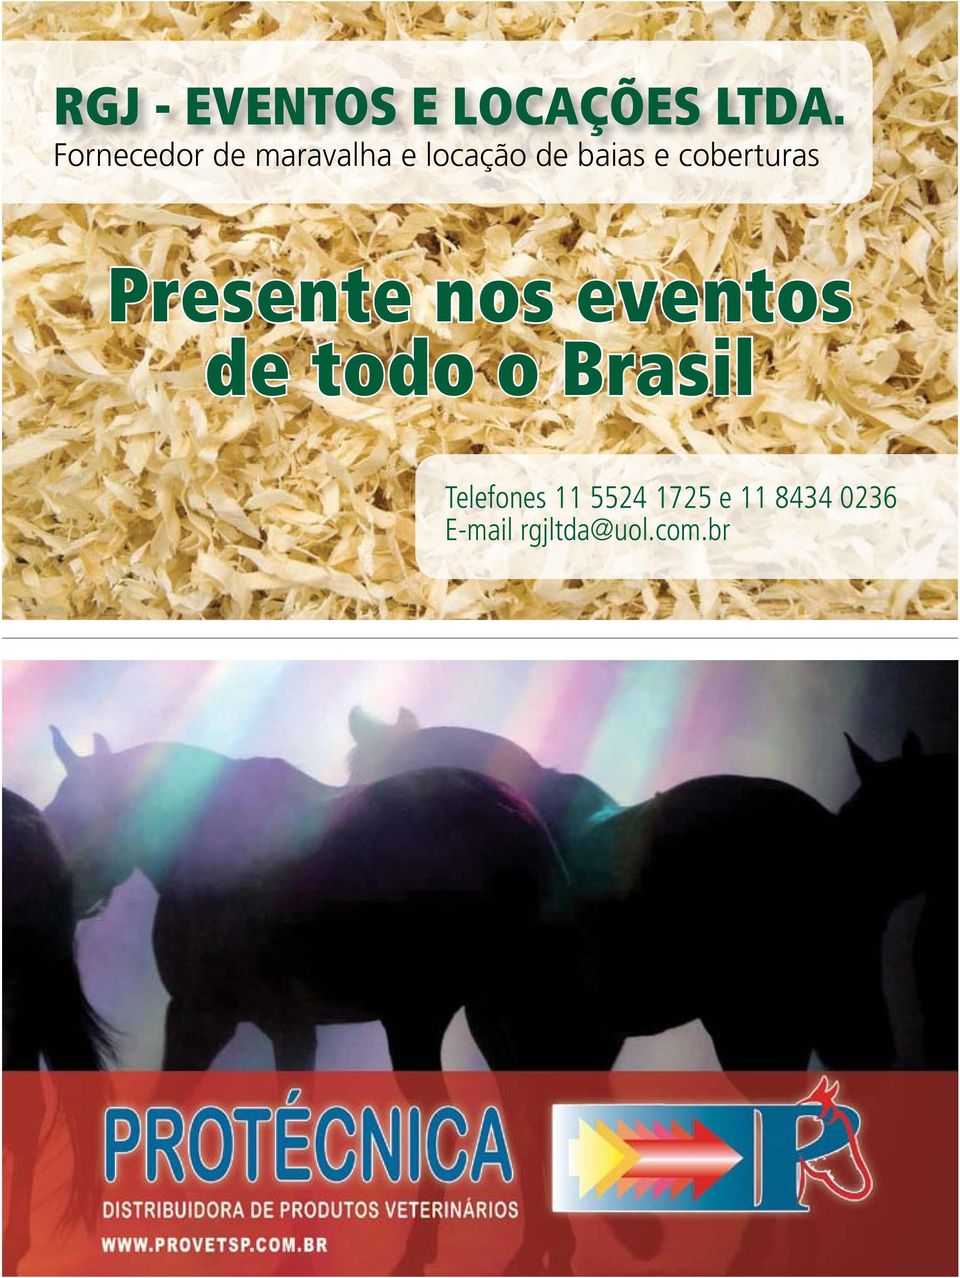 Presente nos eventos de todo o Brasil Telefones 11 5524